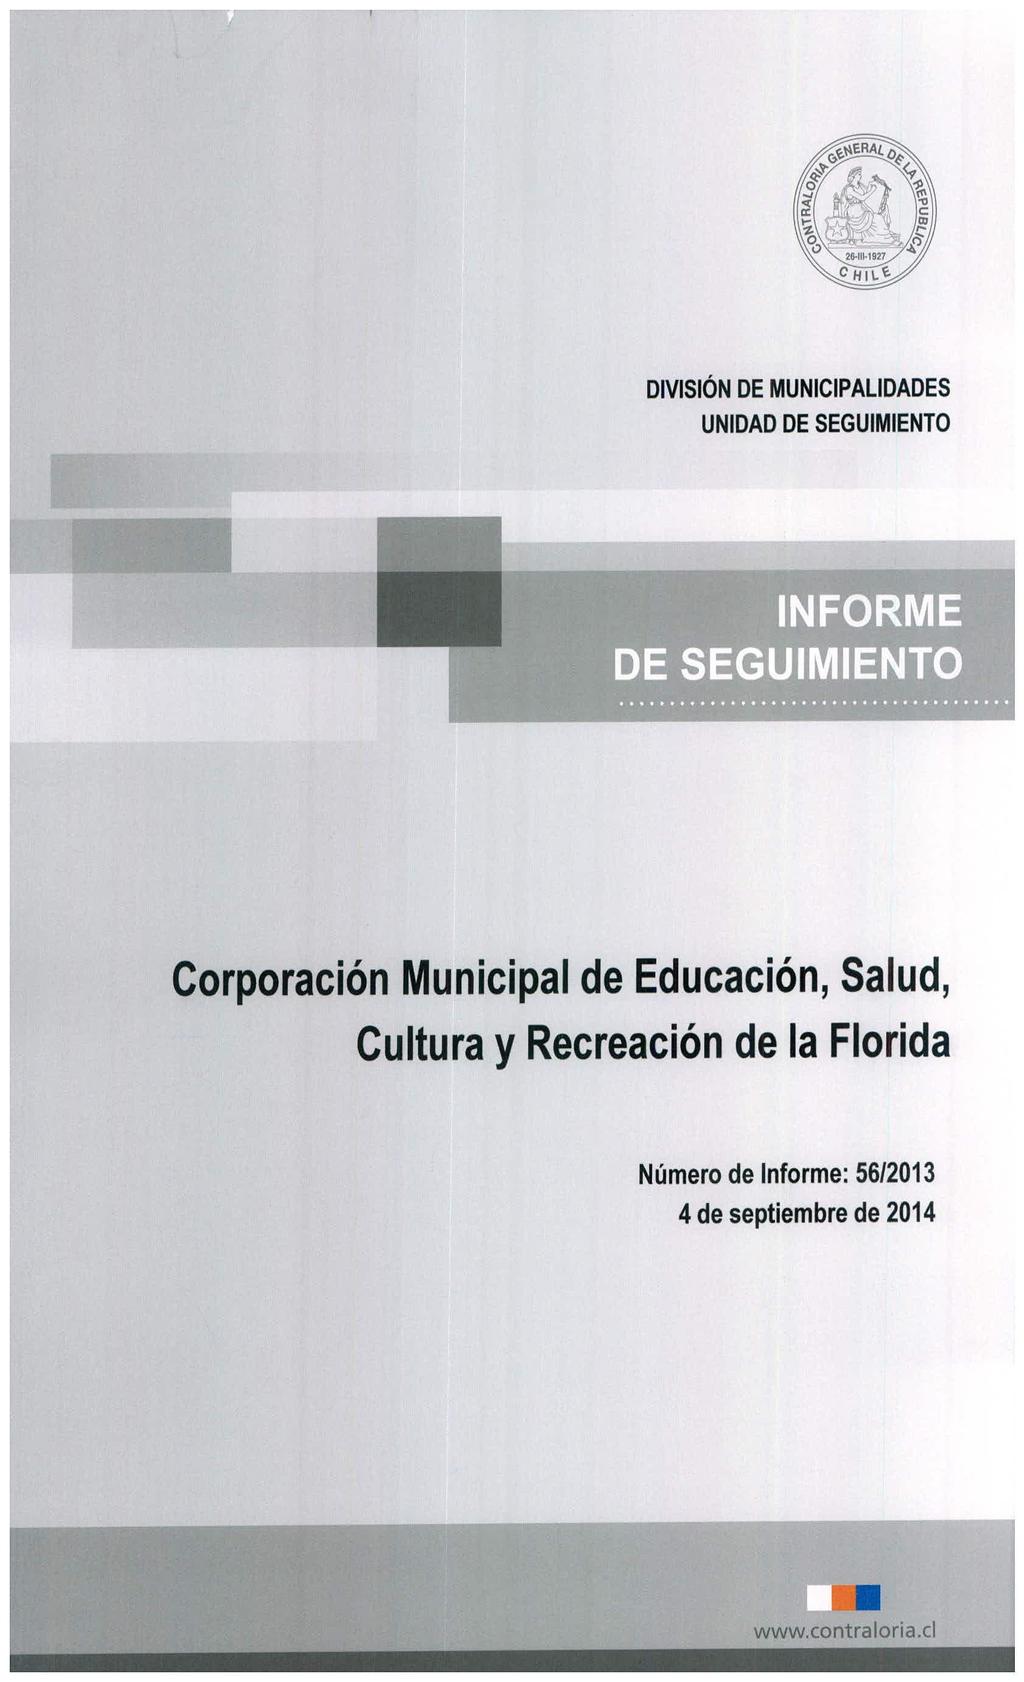 Corporación Municipal de Educación, Salud, Cultura y Recreación de la